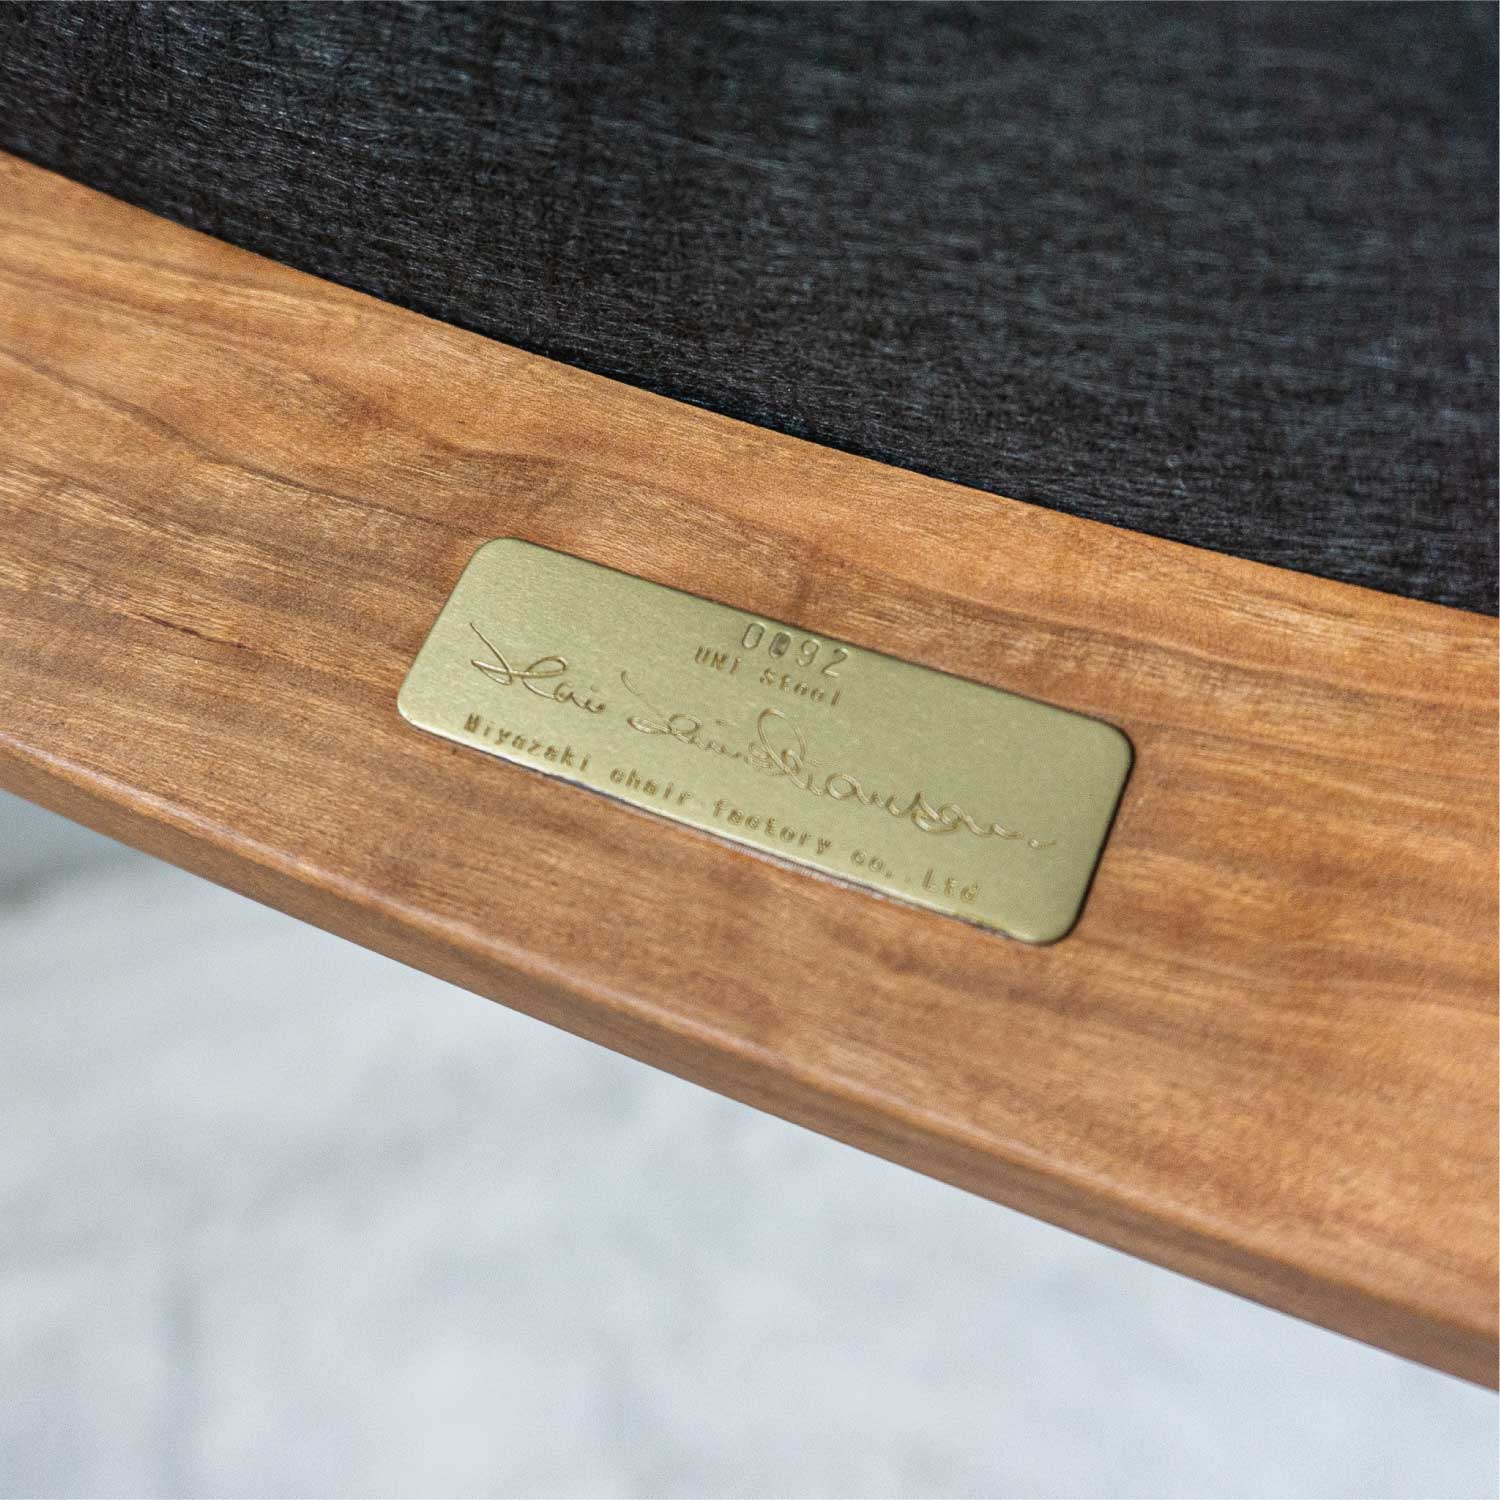 カイ・クリスチャンセン氏デザインの家具には、本人デザインの製造ナンバープレートが貼られています。